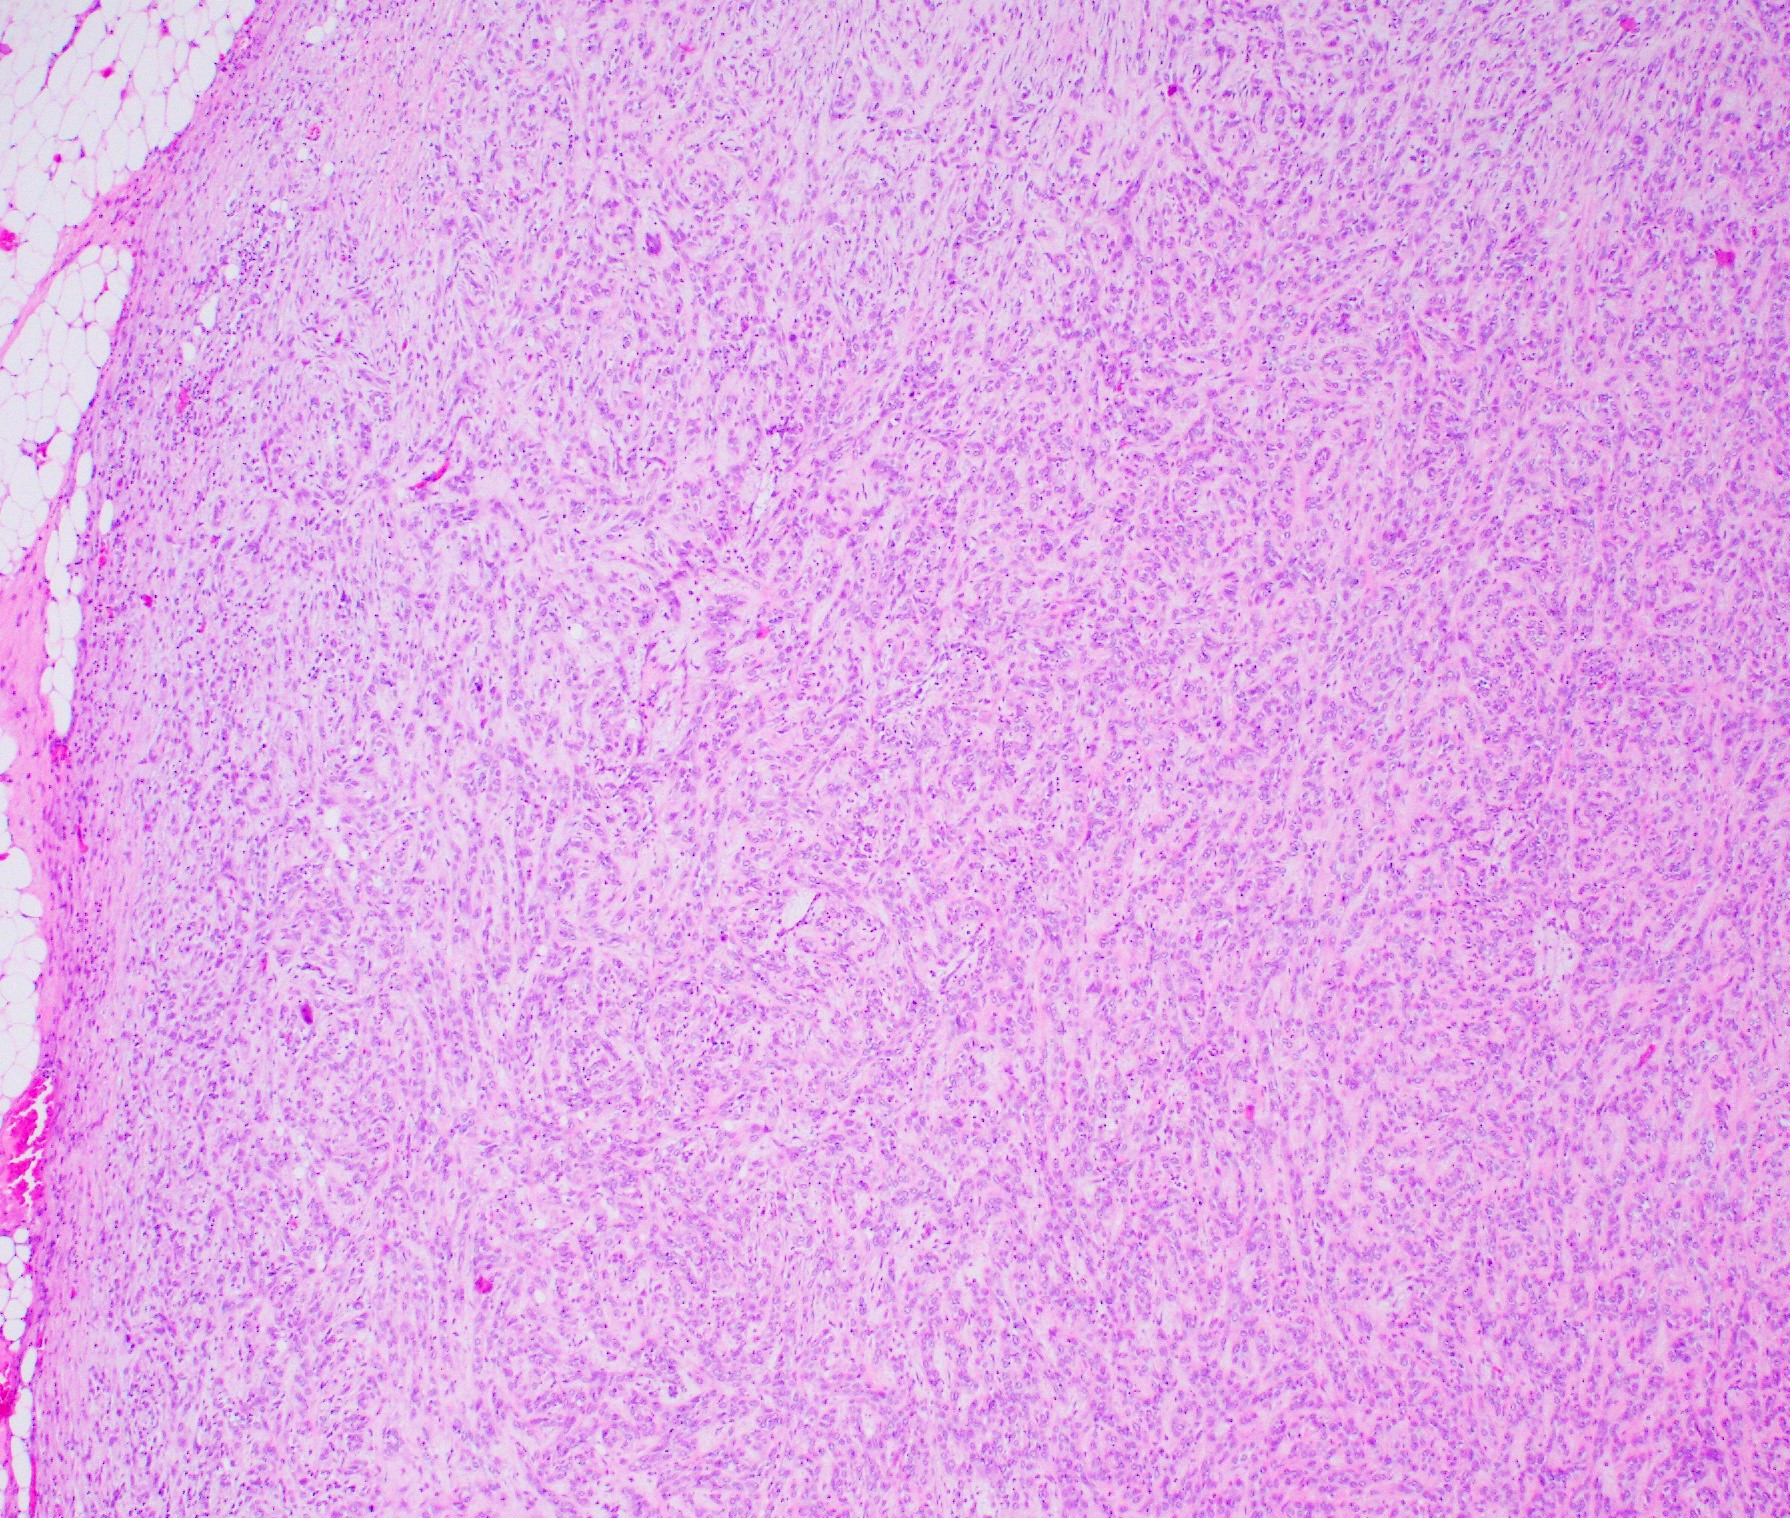 Myoepithelial carcinoma